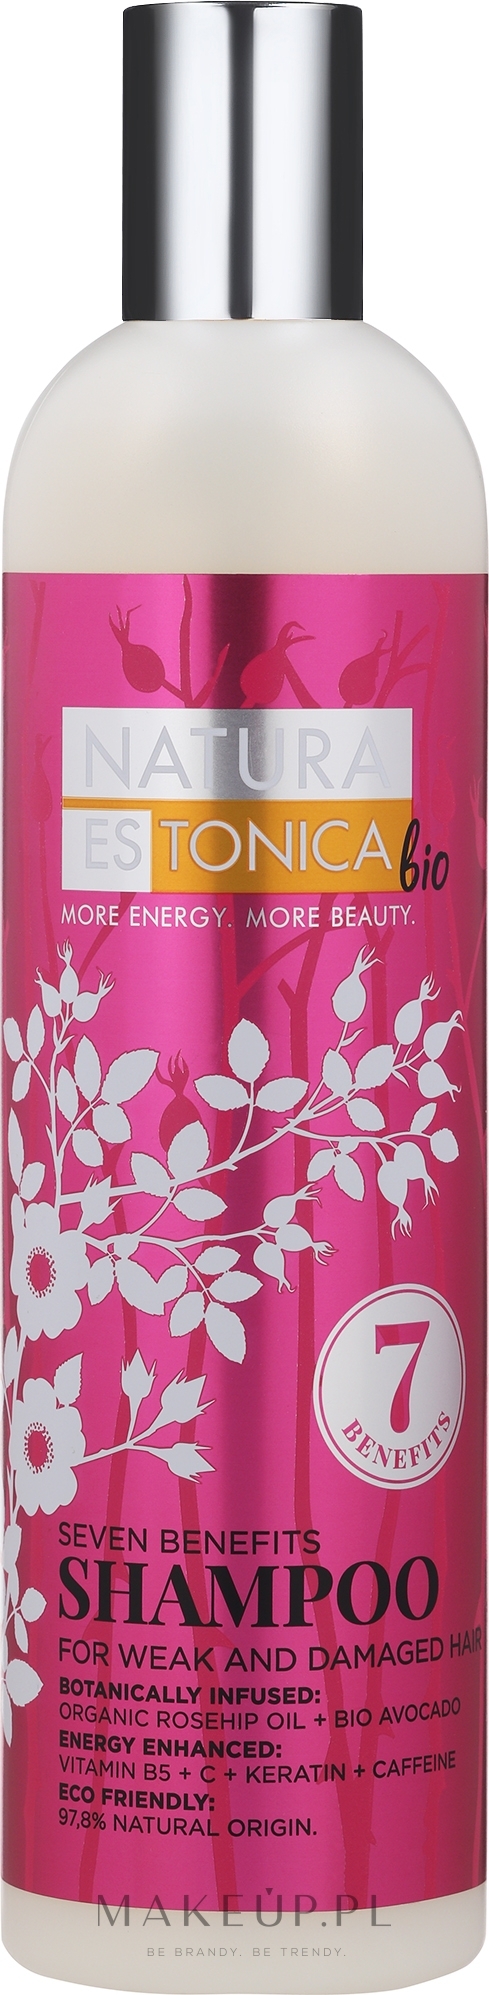 natura estonica szampon 7 korzyści włosy osłabione